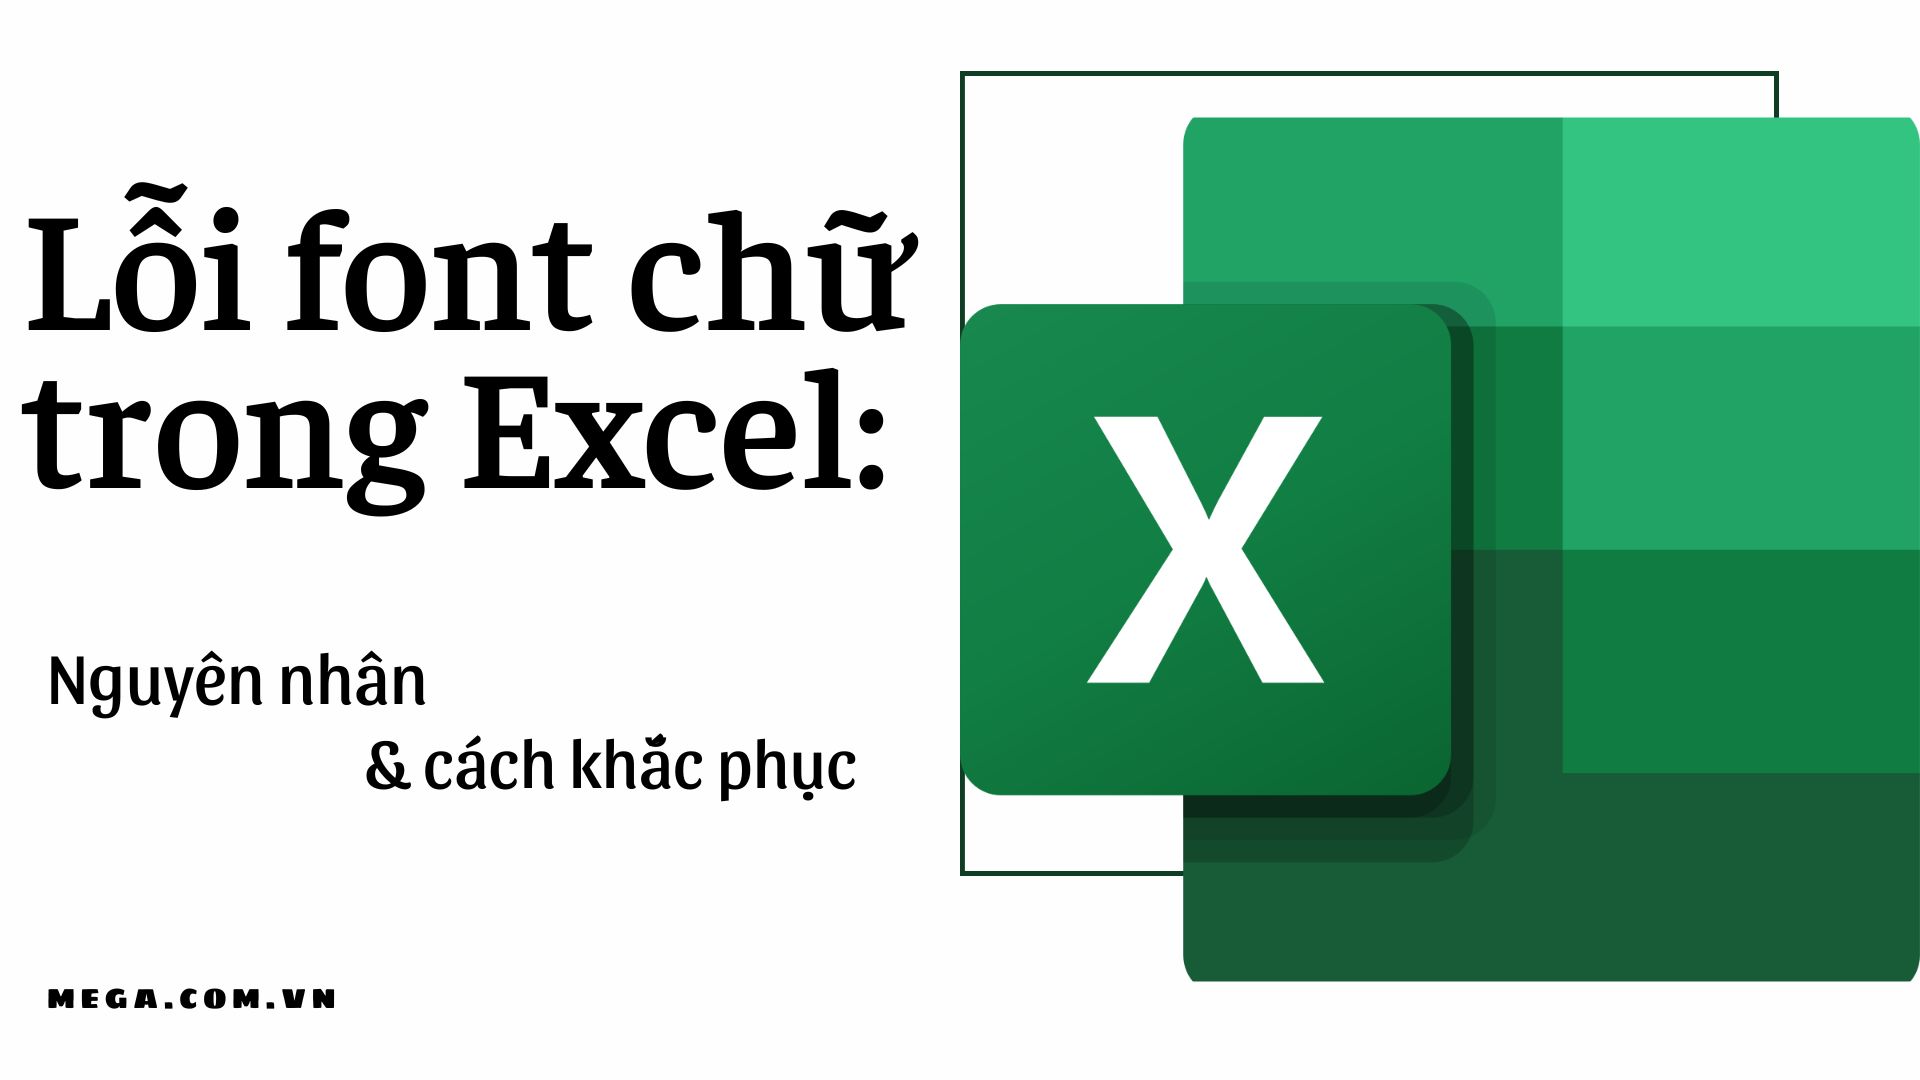 Khắc phục lỗi font chữ trong Excel: Bạn gặp trục trặc khi sử dụng Excel vì lỗi font chữ? Đừng lo lắng vì hiện nay có nhiều cách để khắc phục lỗi font chữ trong Excel. Bằng cách sử dụng các công cụ đơn giản, bạn có thể dễ dàng sửa chữa và giải quyết các vấn đề về font chữ để sử dụng Excel một cách hiệu quả.